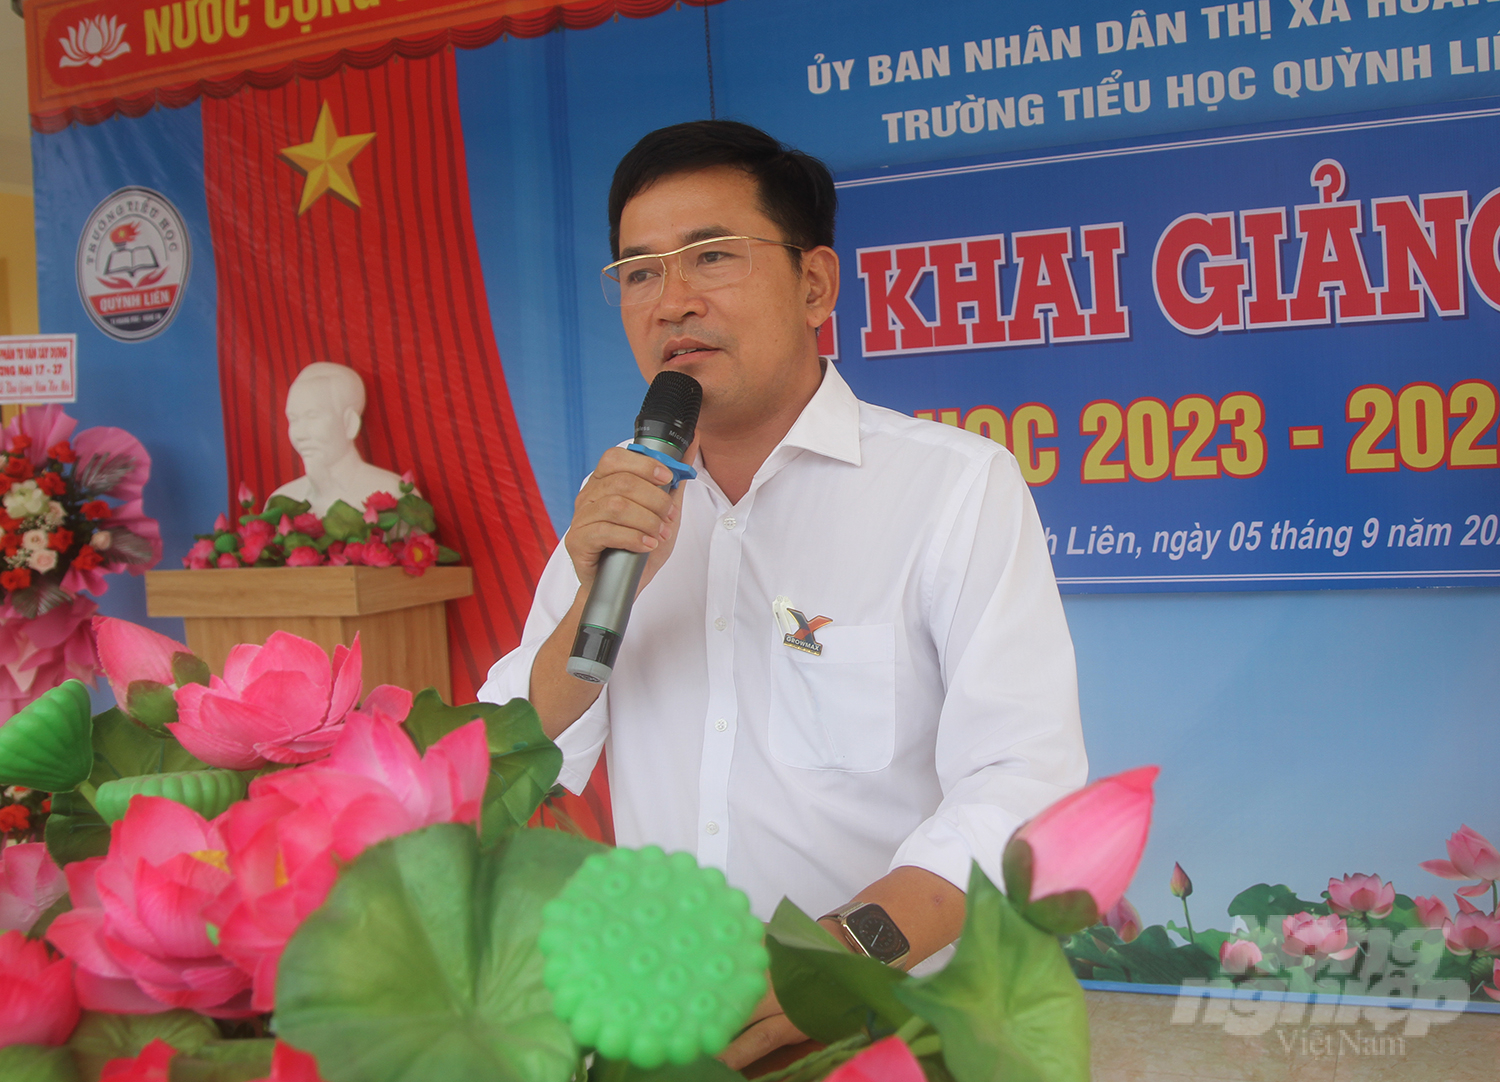 Ông Đặng Văn Thành, Giám đốc Khu vực miền Bắc Công ty GrowMax nhắn nhủ đến các em học sinh. Ảnh: Việt Khánh.